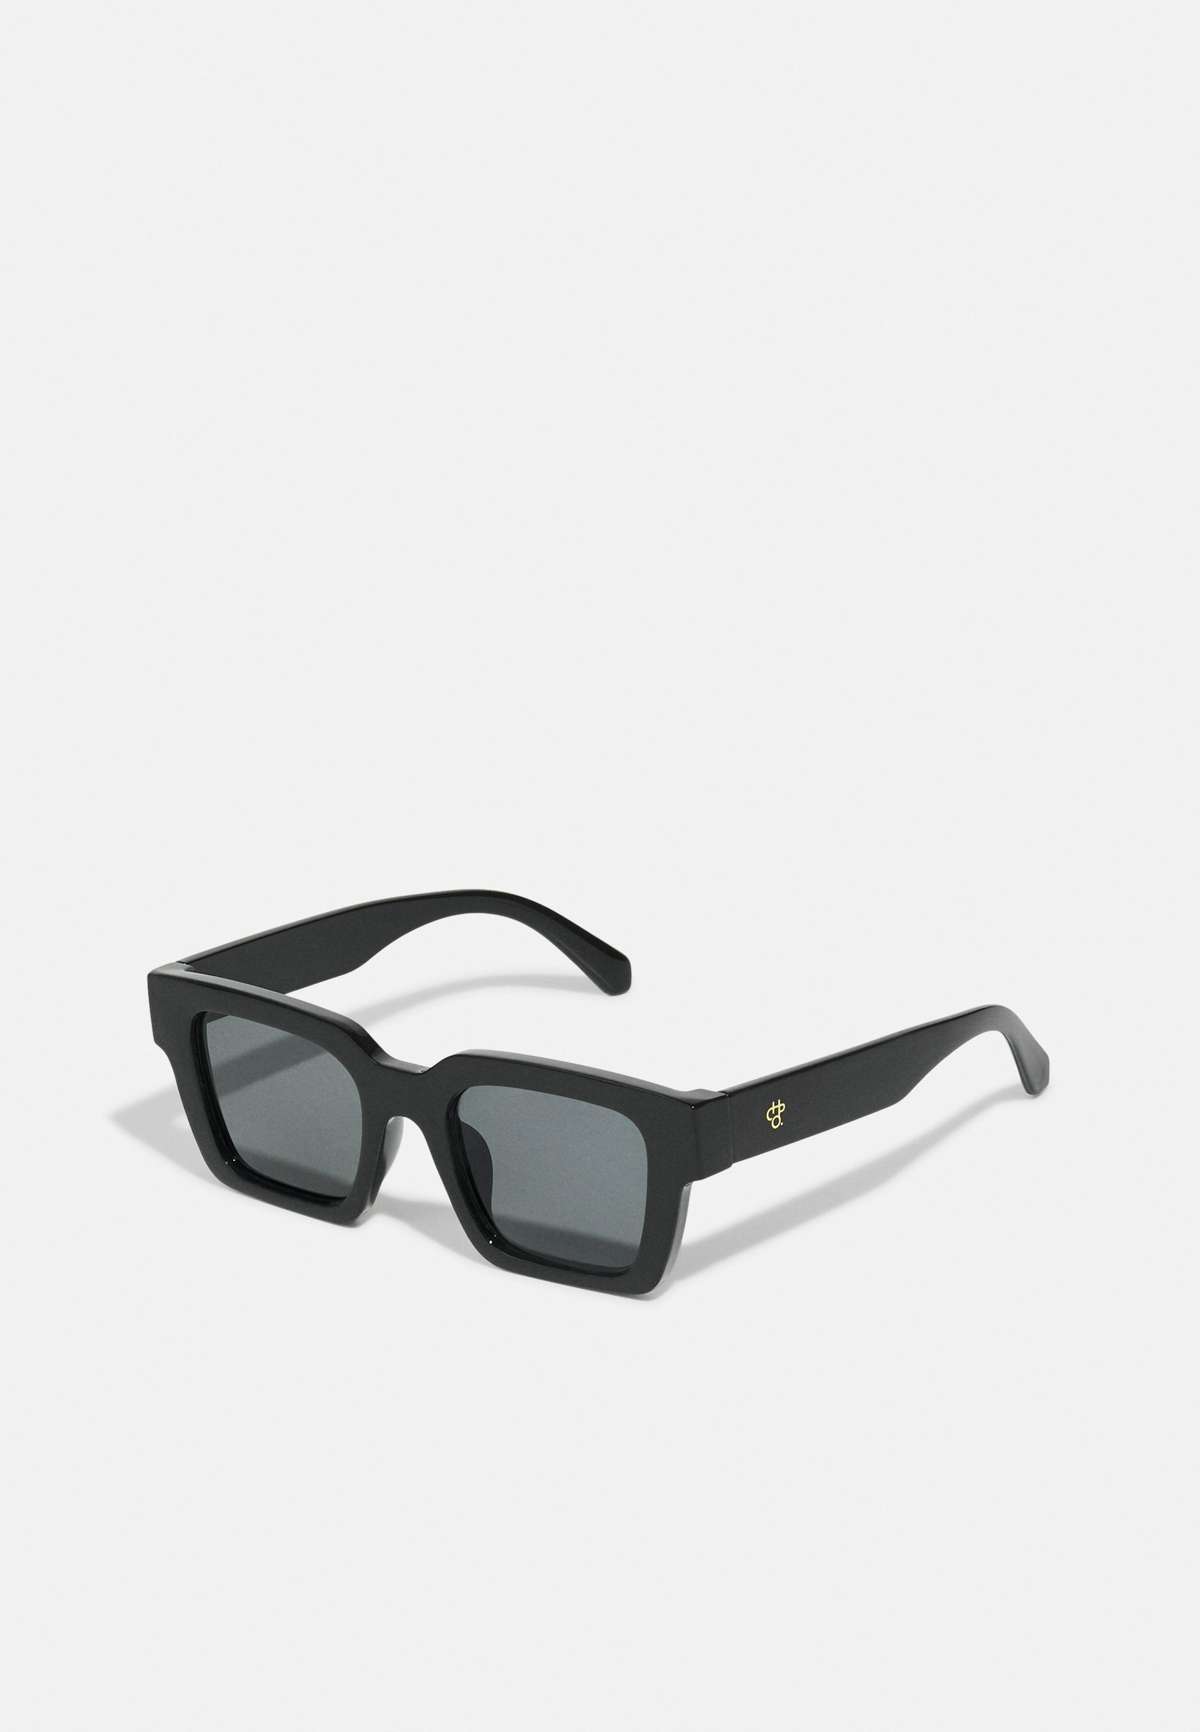 Солнцезащитные очки MAX UNISEX